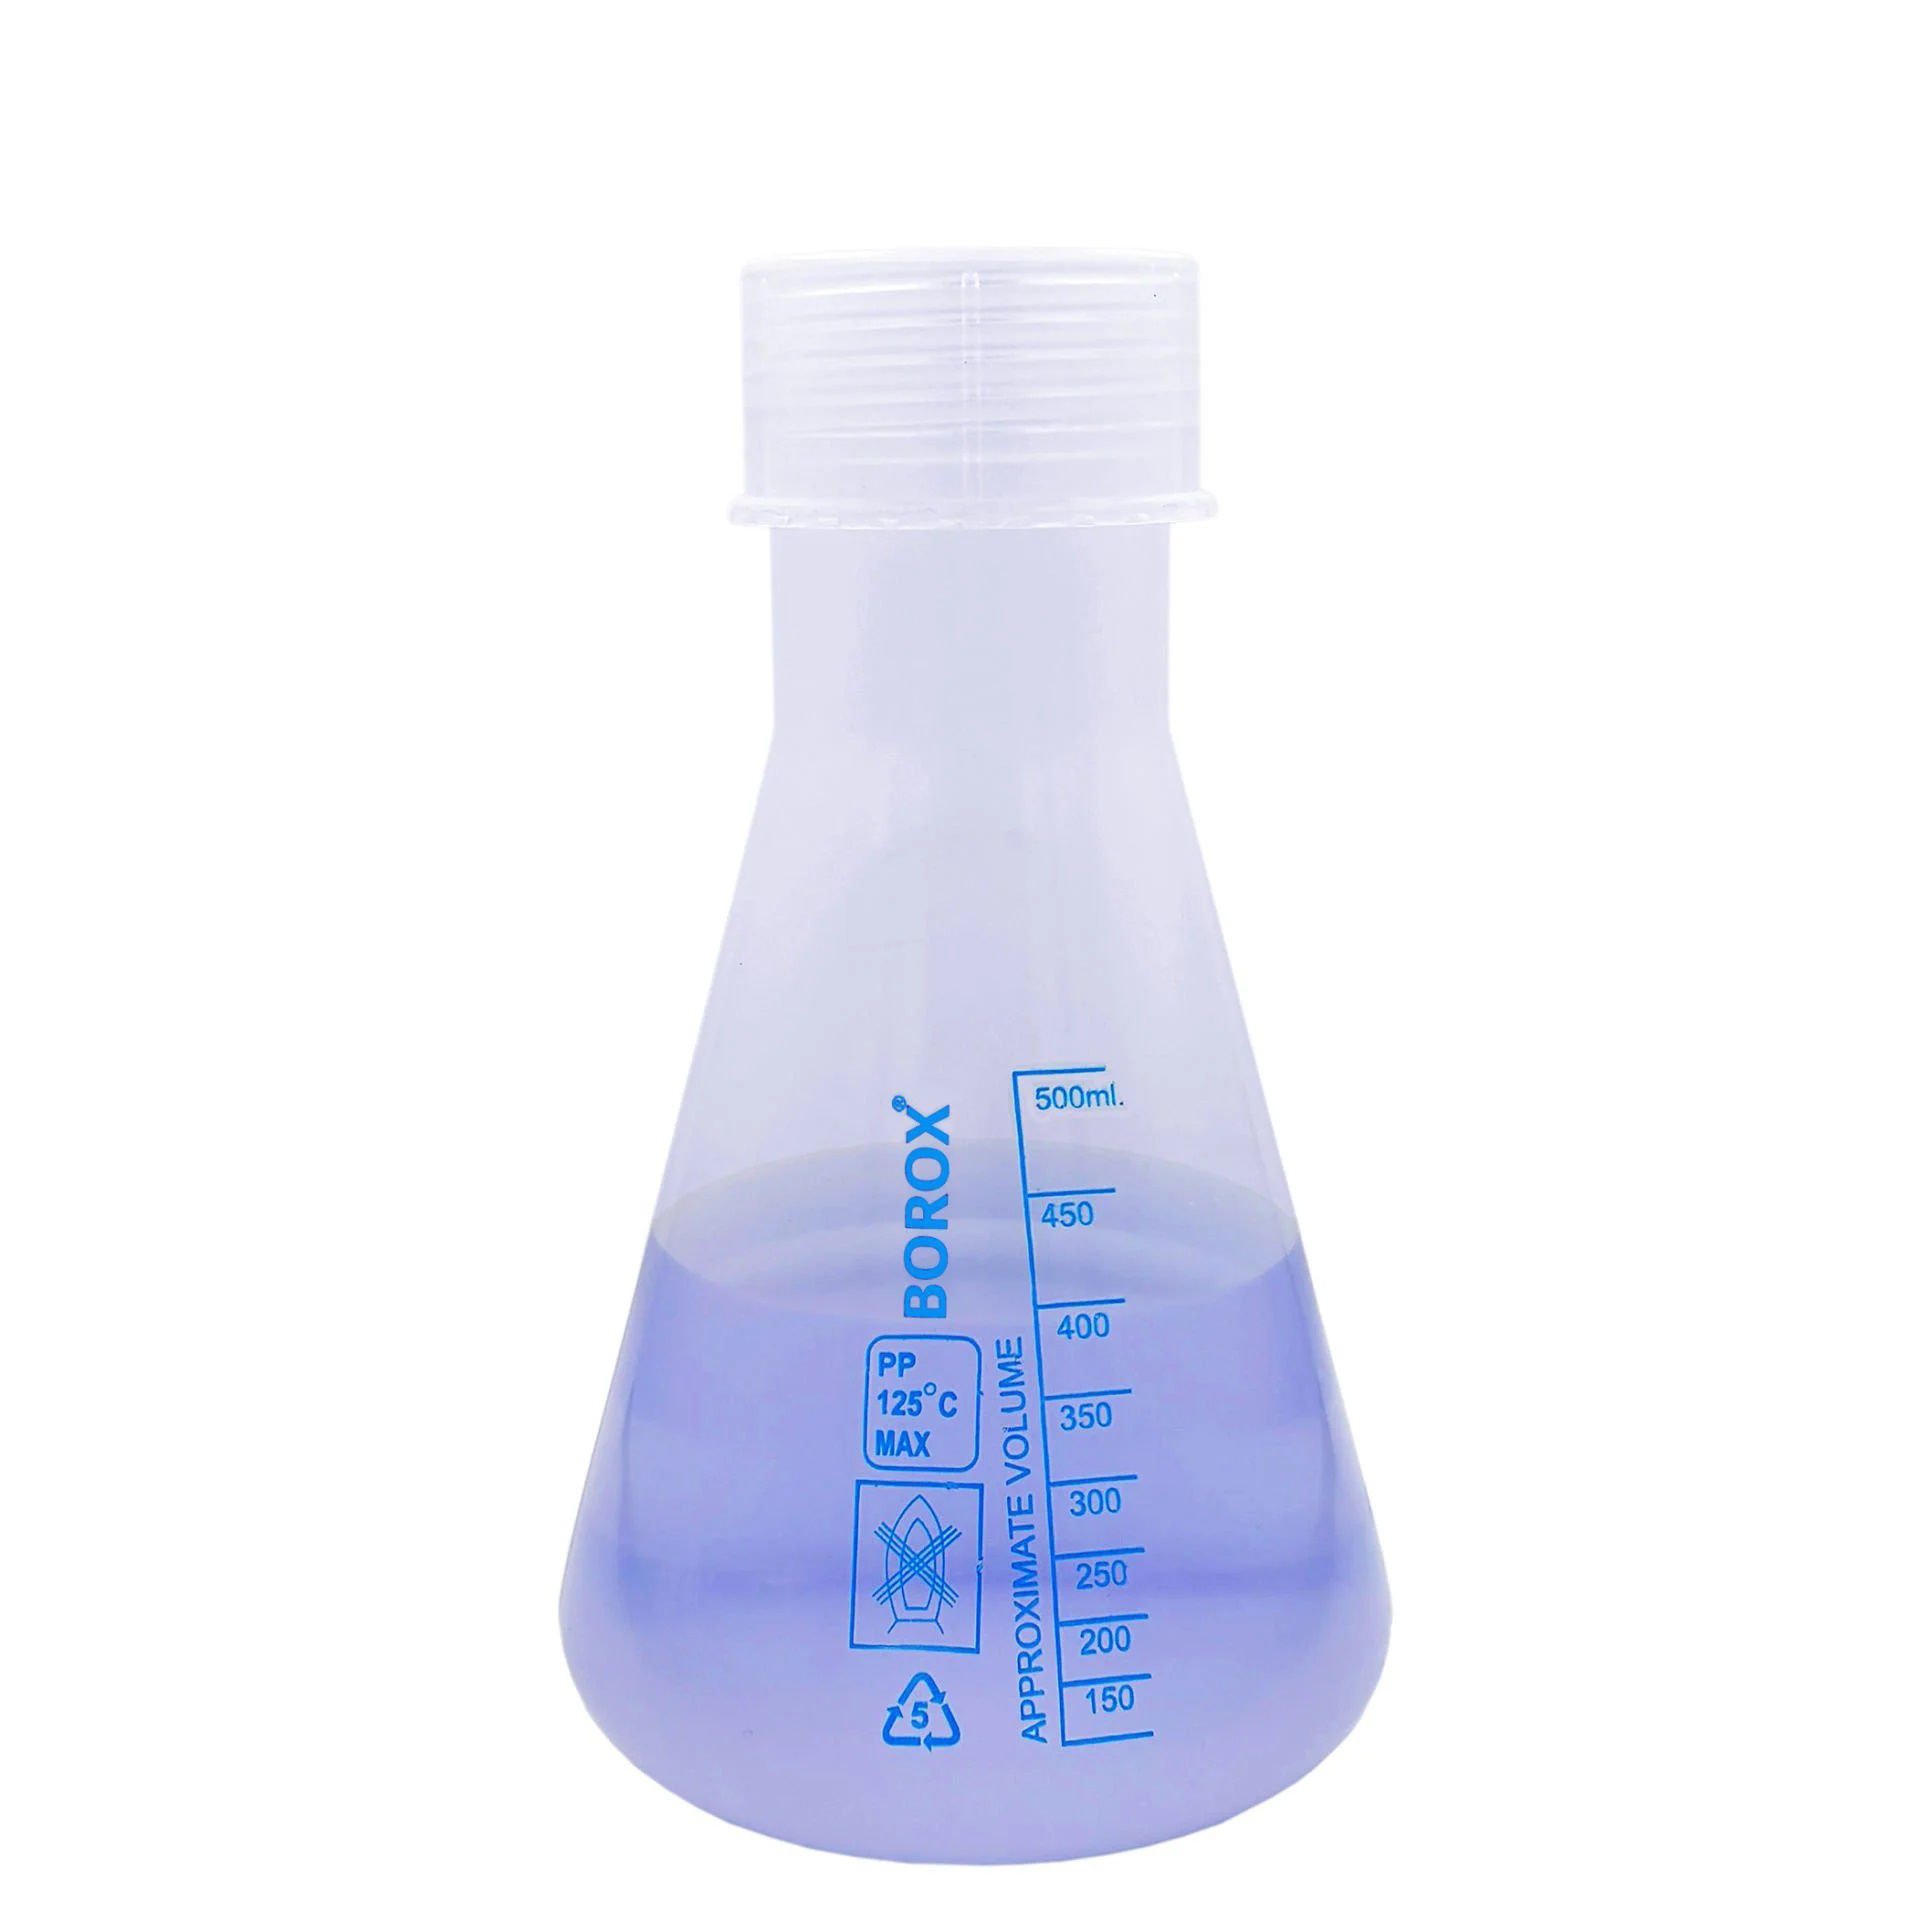 Borox Plastik Erlen 500 ml - Erlenmeyer Flask Vida Kapaklı - Mavi Skala